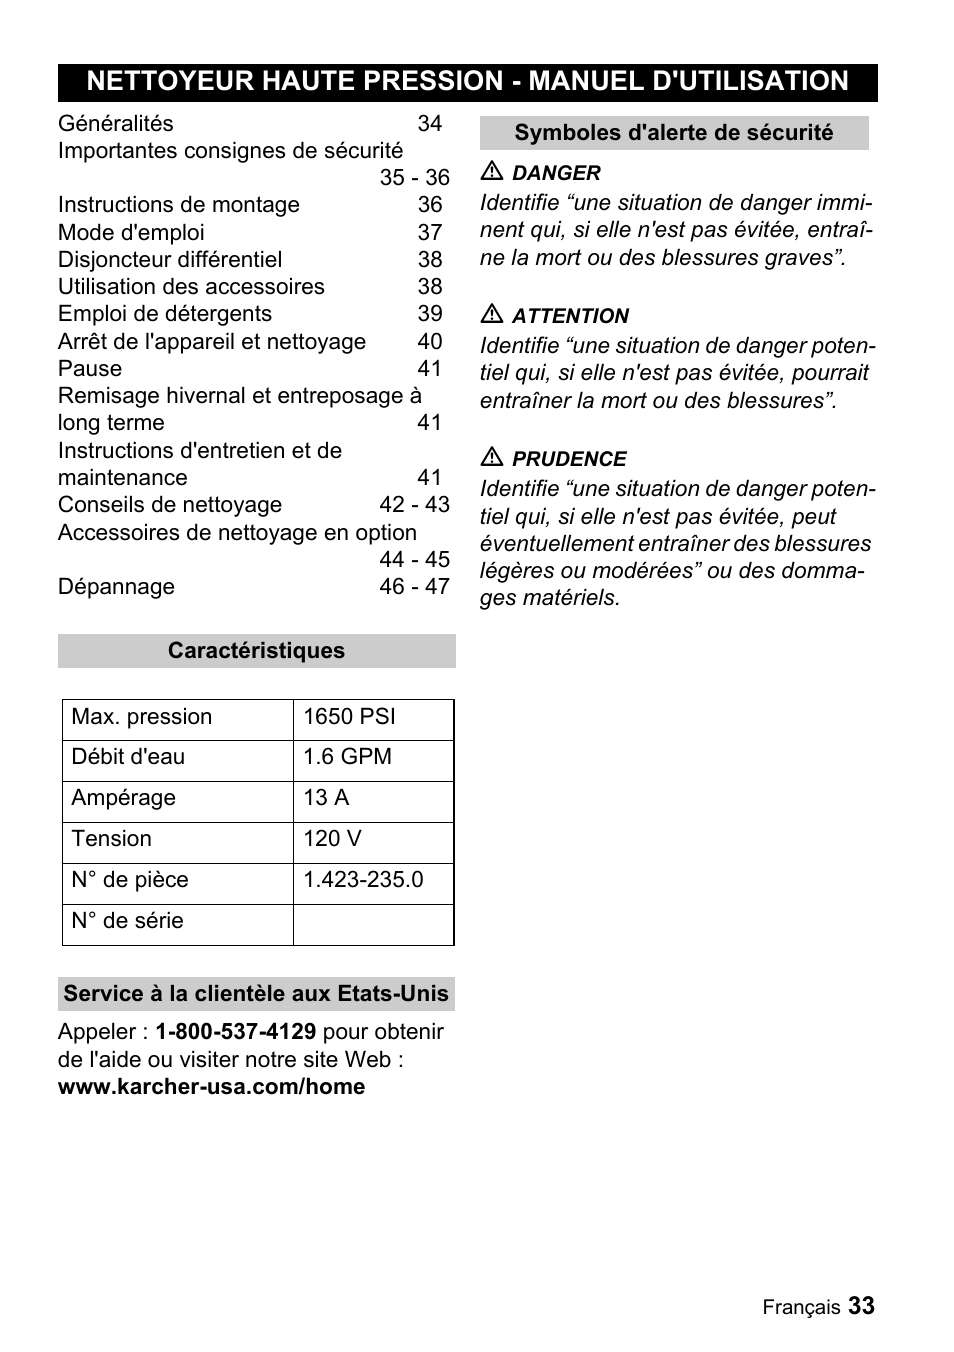 Nettoyeur haute pression - manuel d'utilisation | Karcher K 3.99M User  Manual | Page 33 / 48 | Original mode